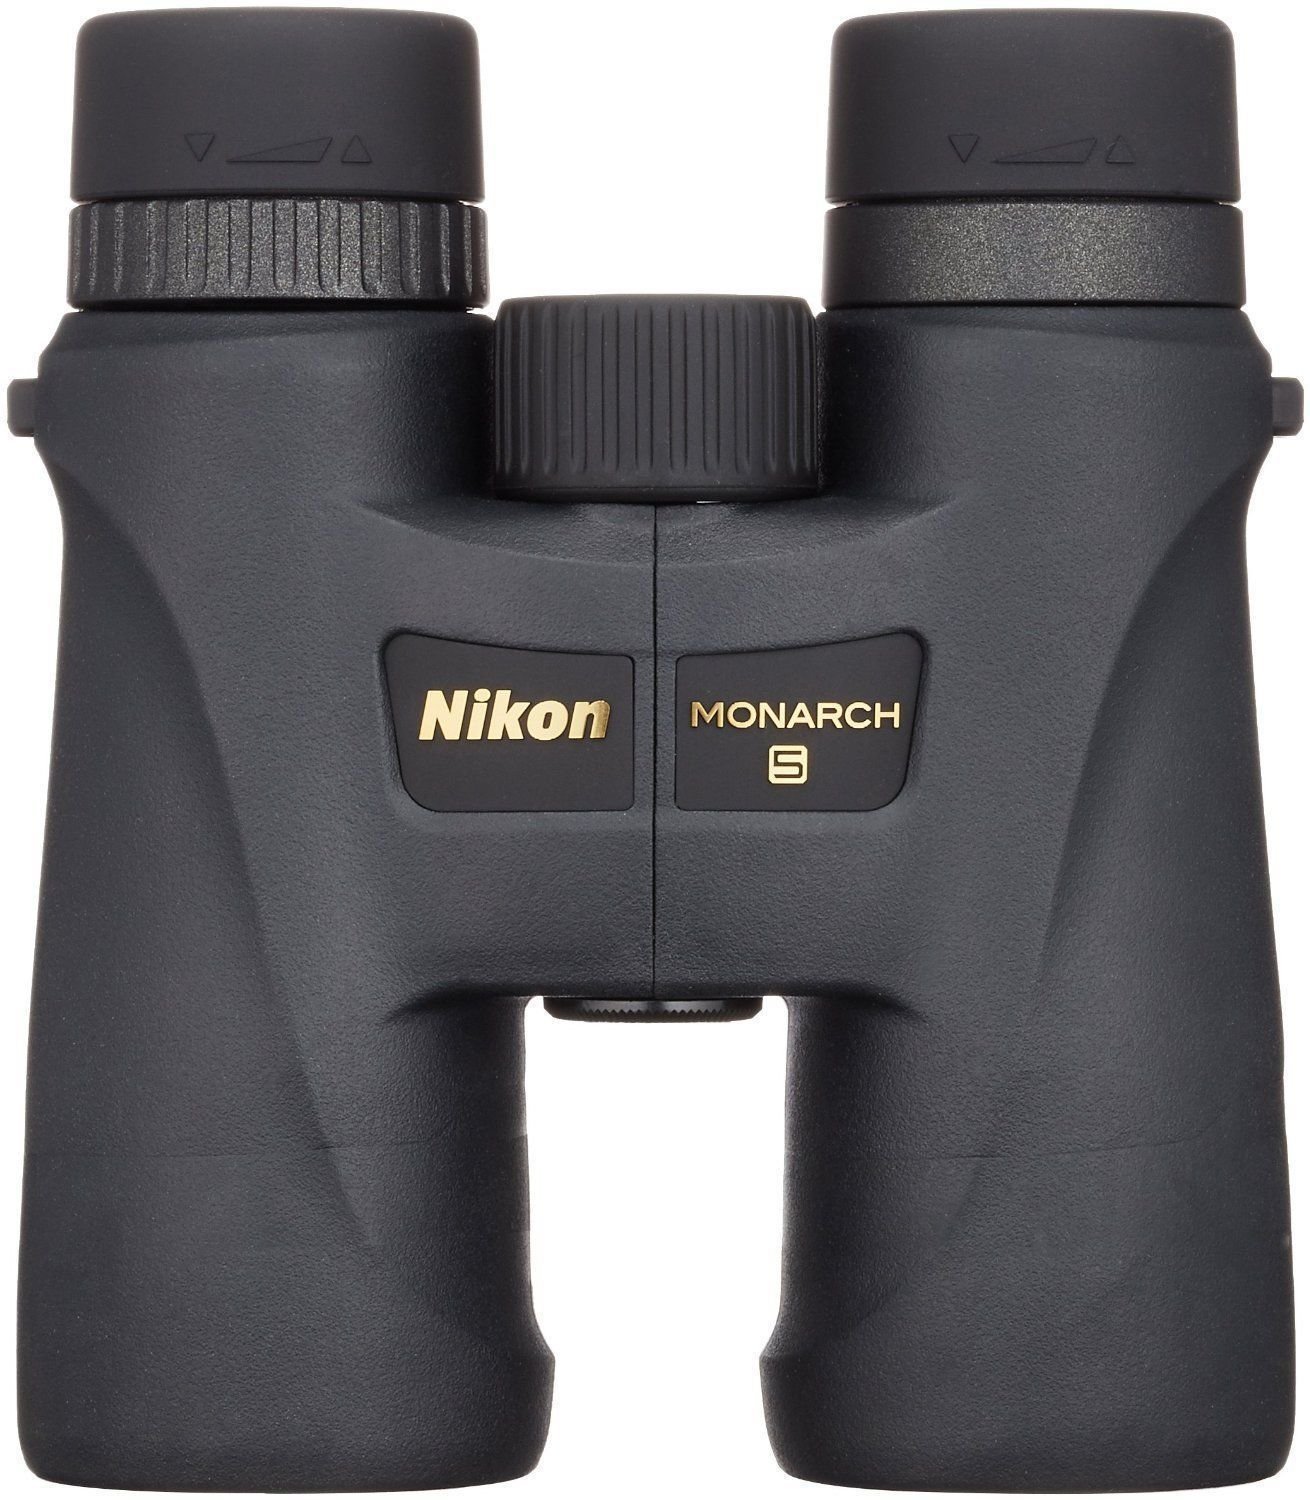 Binocolo da campo Nikon Monarch 5 8x42